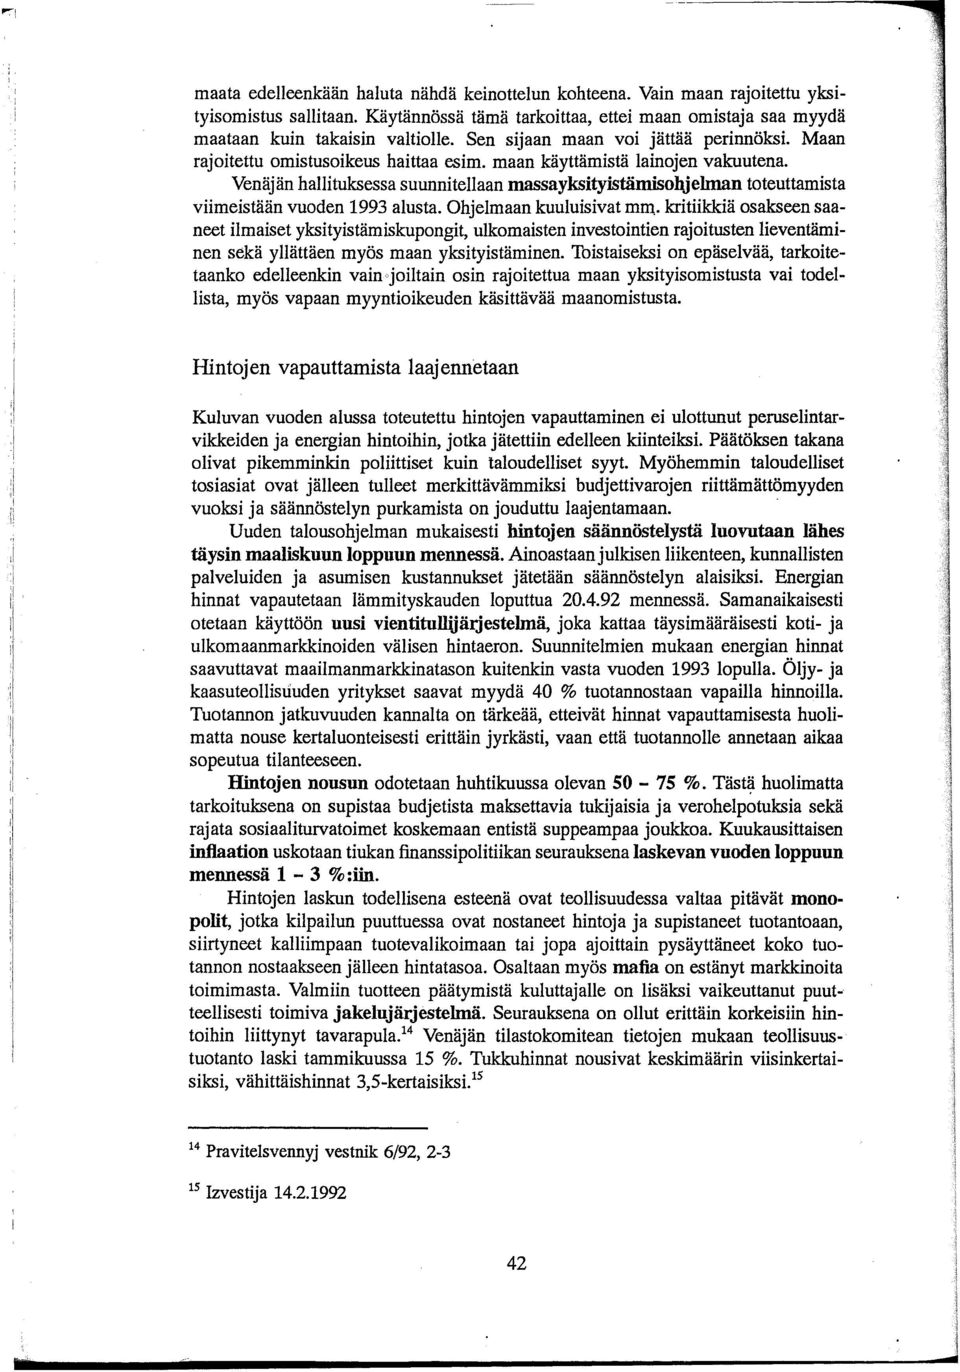 maan käyttämistä lainojen vakuutena. Venäjän hallituksessa suunnitellaan massayksityistämisohjehnan toteuttamista viimeistään vuoden 1993 alusta. Ohjelmaan kuuluisivat mm.